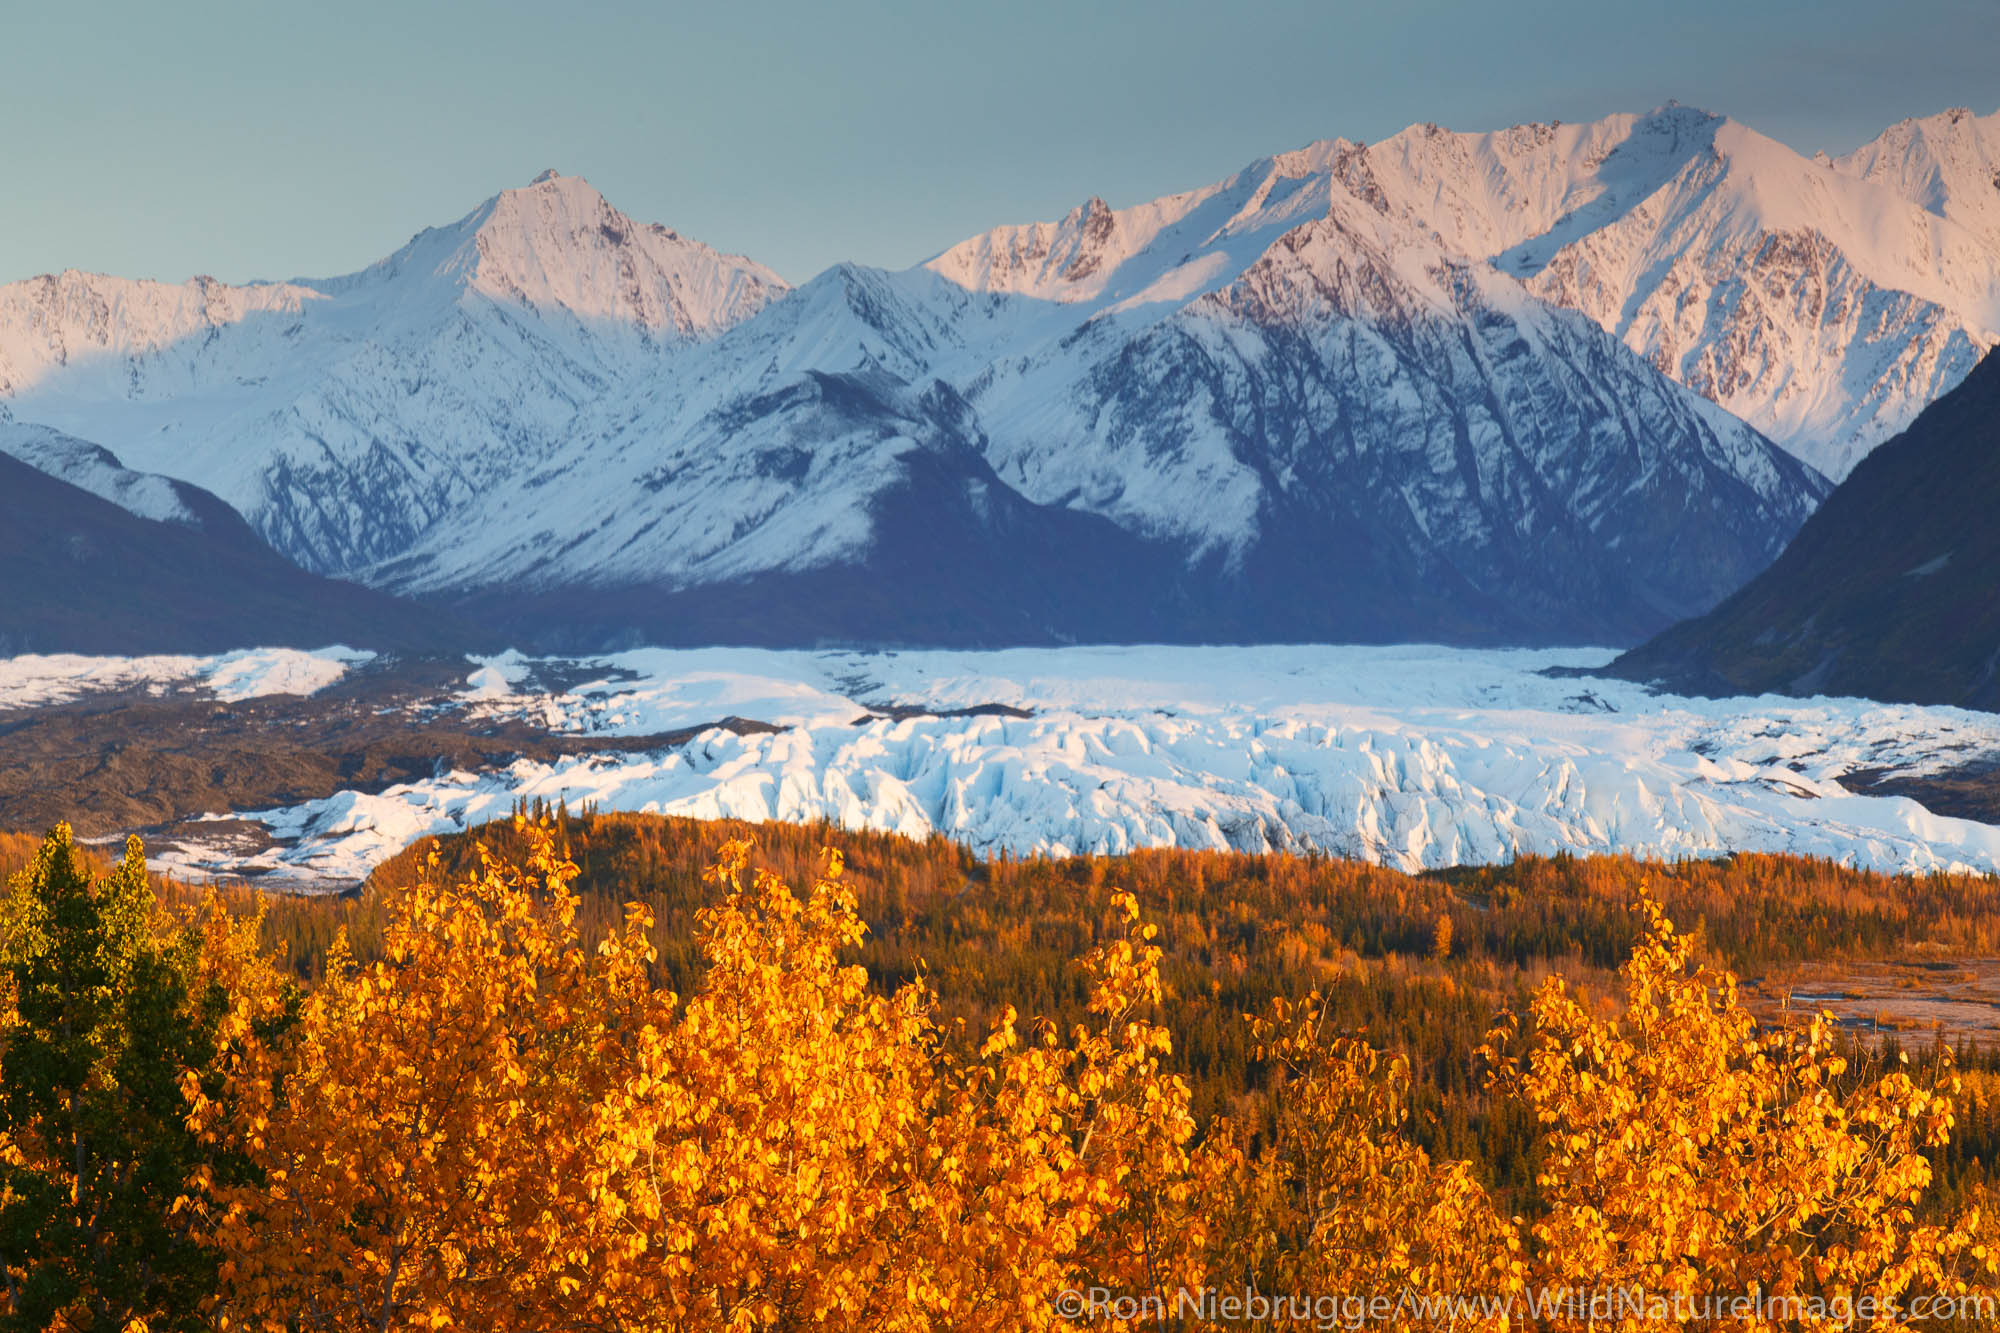 Matanuska Glacier and the Chugach Mountains, Alaska.